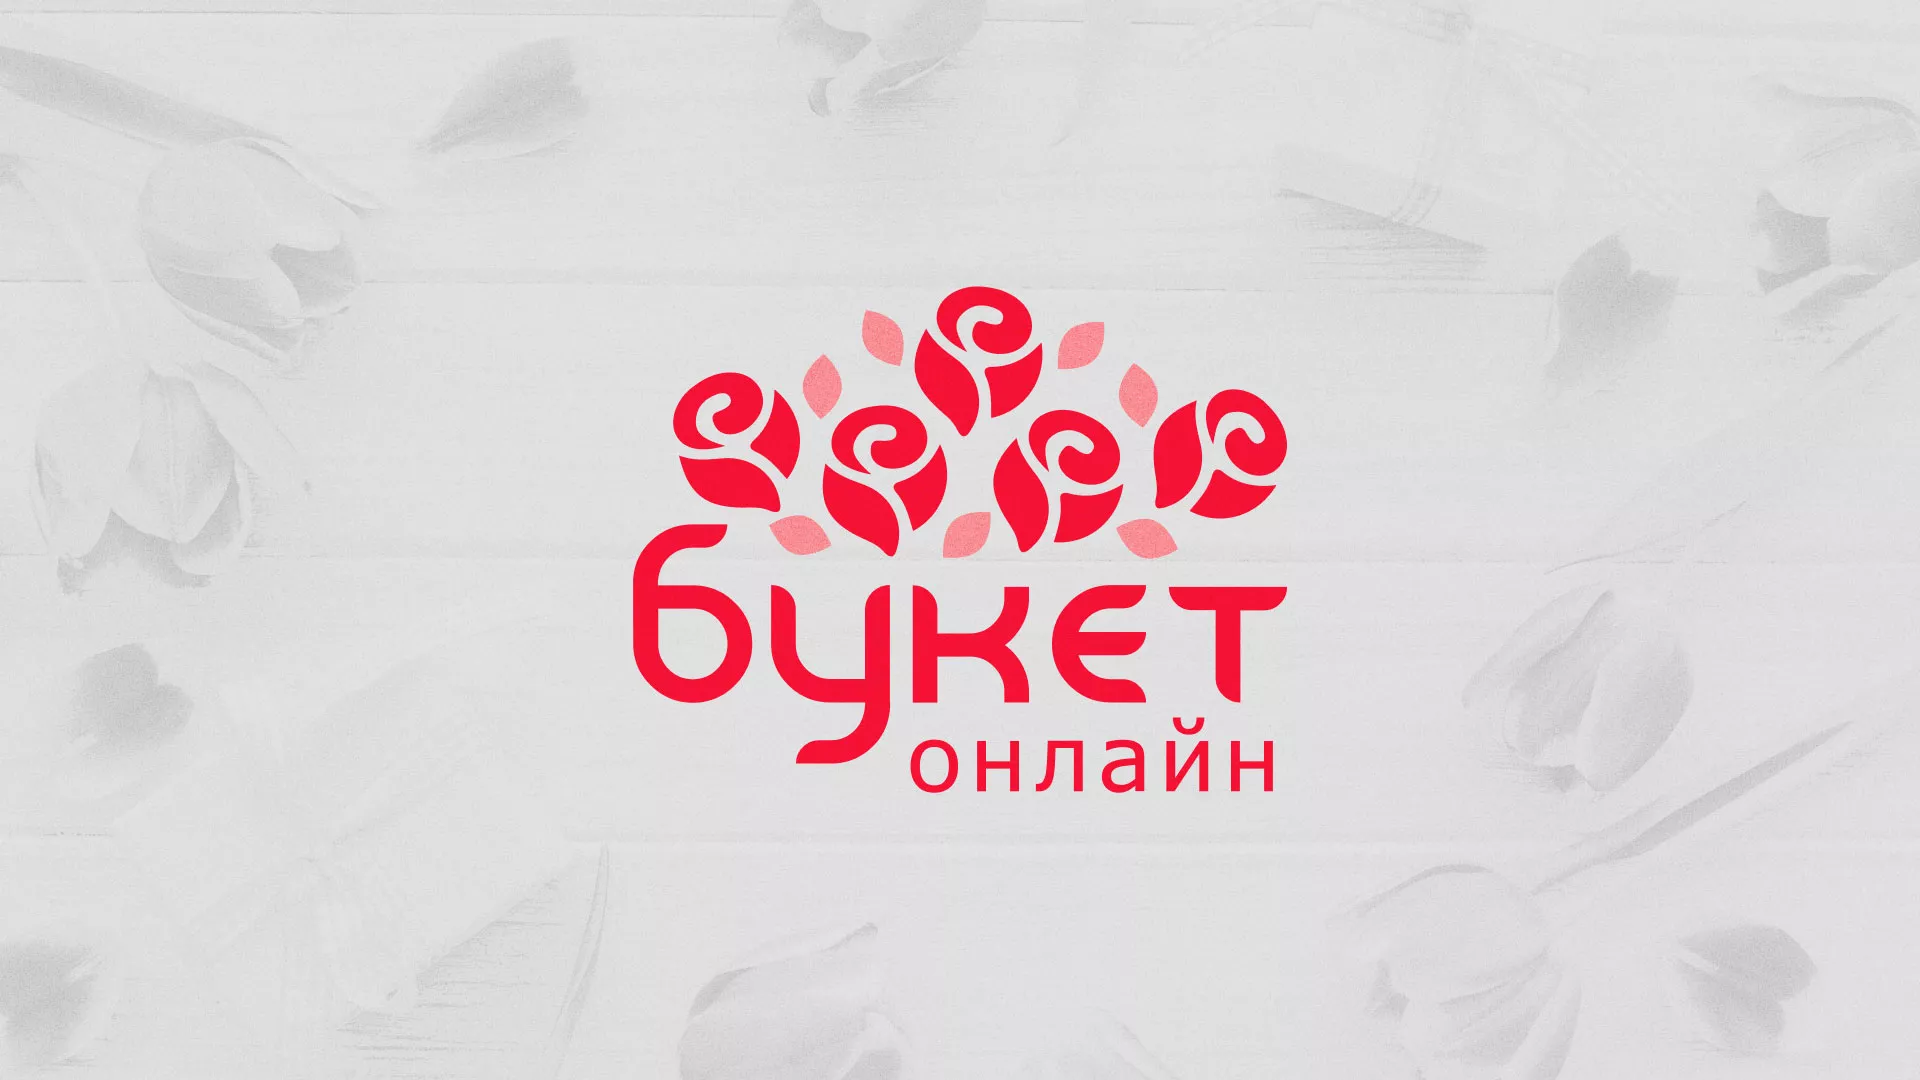 Создание интернет-магазина «Букет-онлайн» по цветам в Петухово